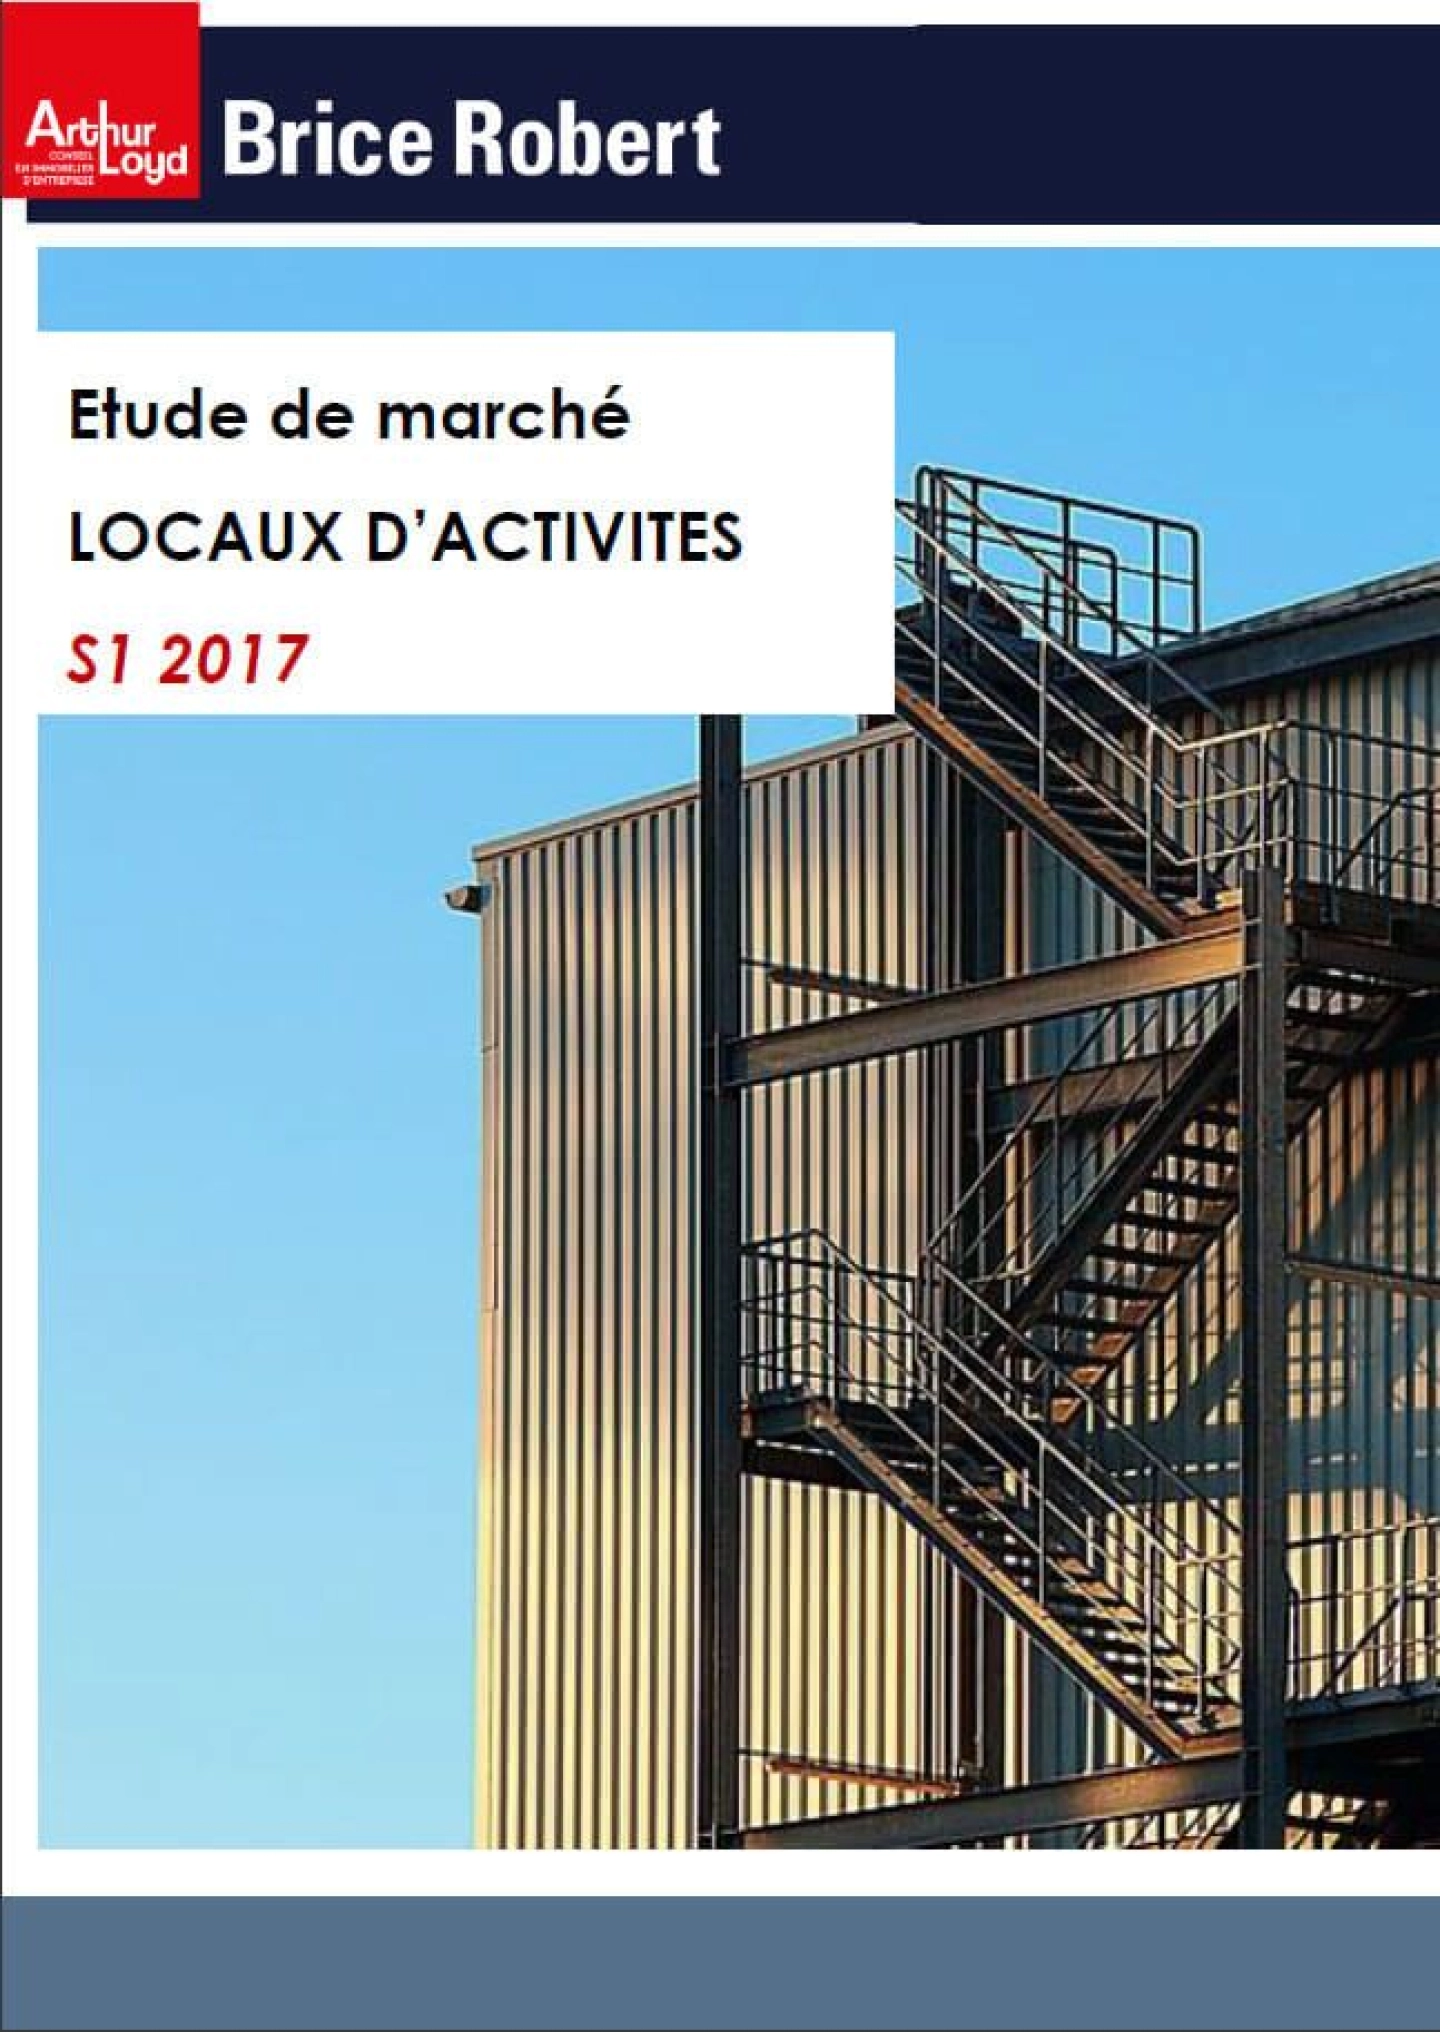 Étude de marché Locaux d'Activités - S1 2017